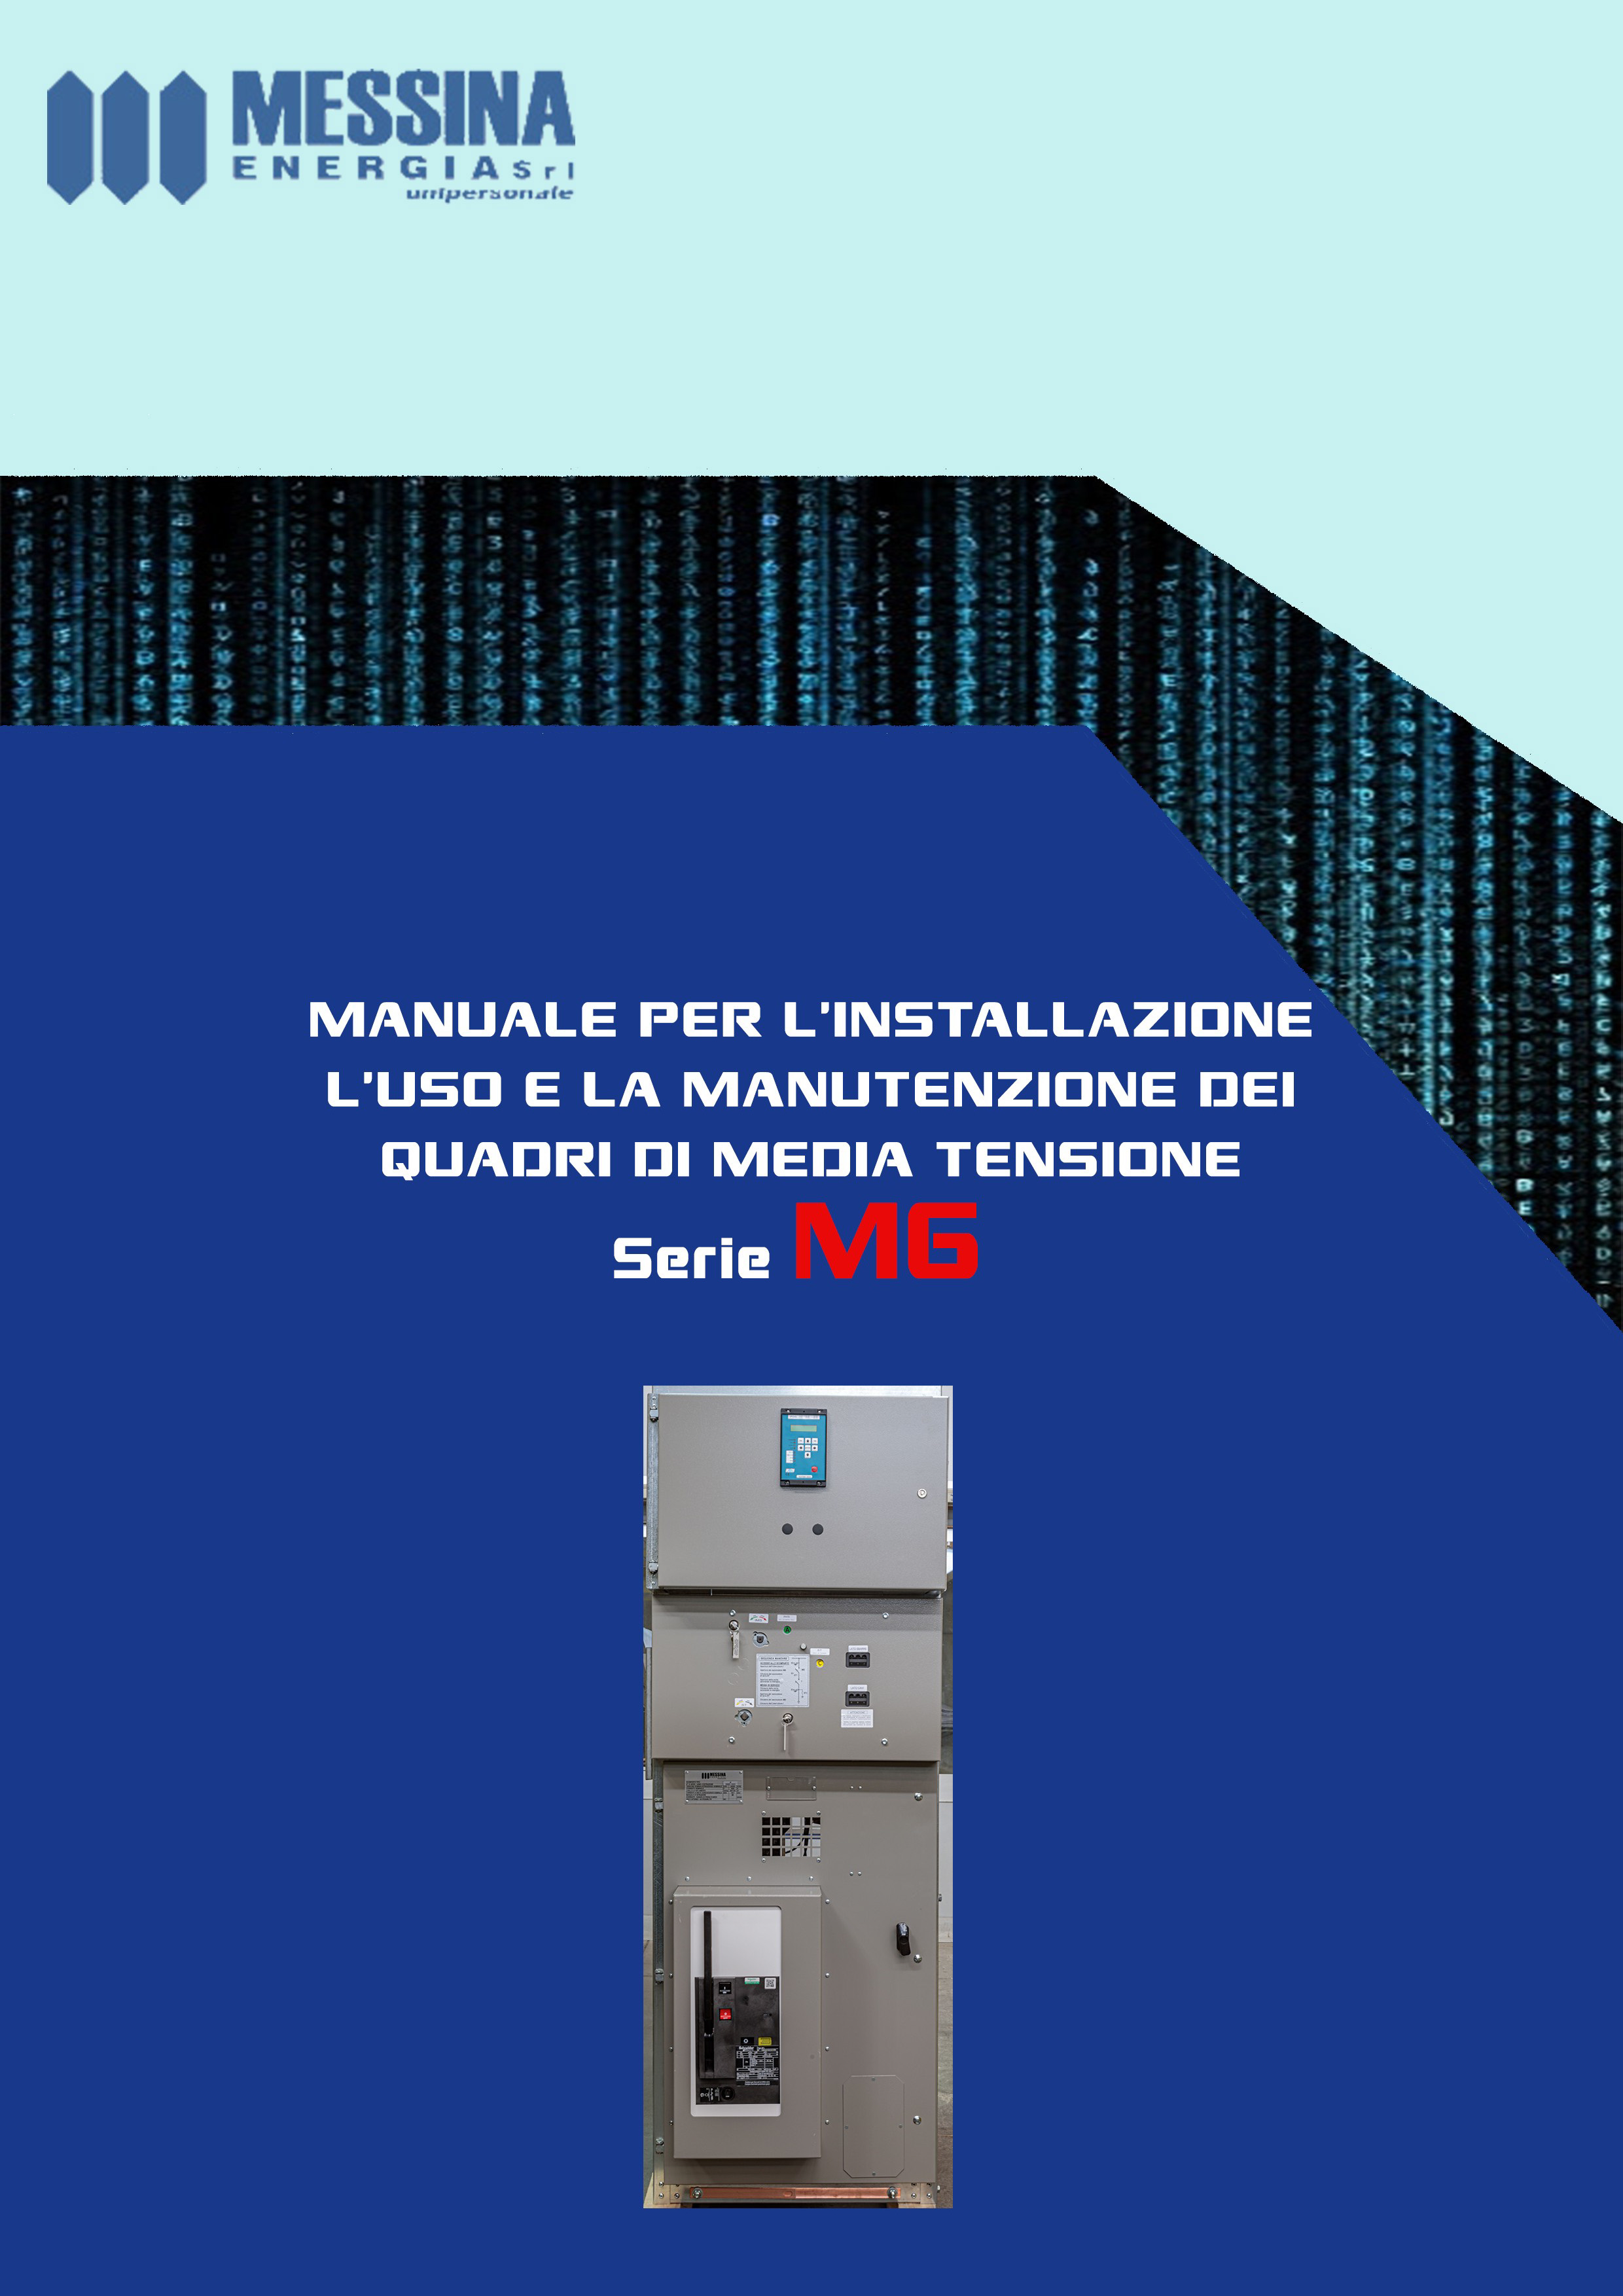 Manuale_M6_Italiano